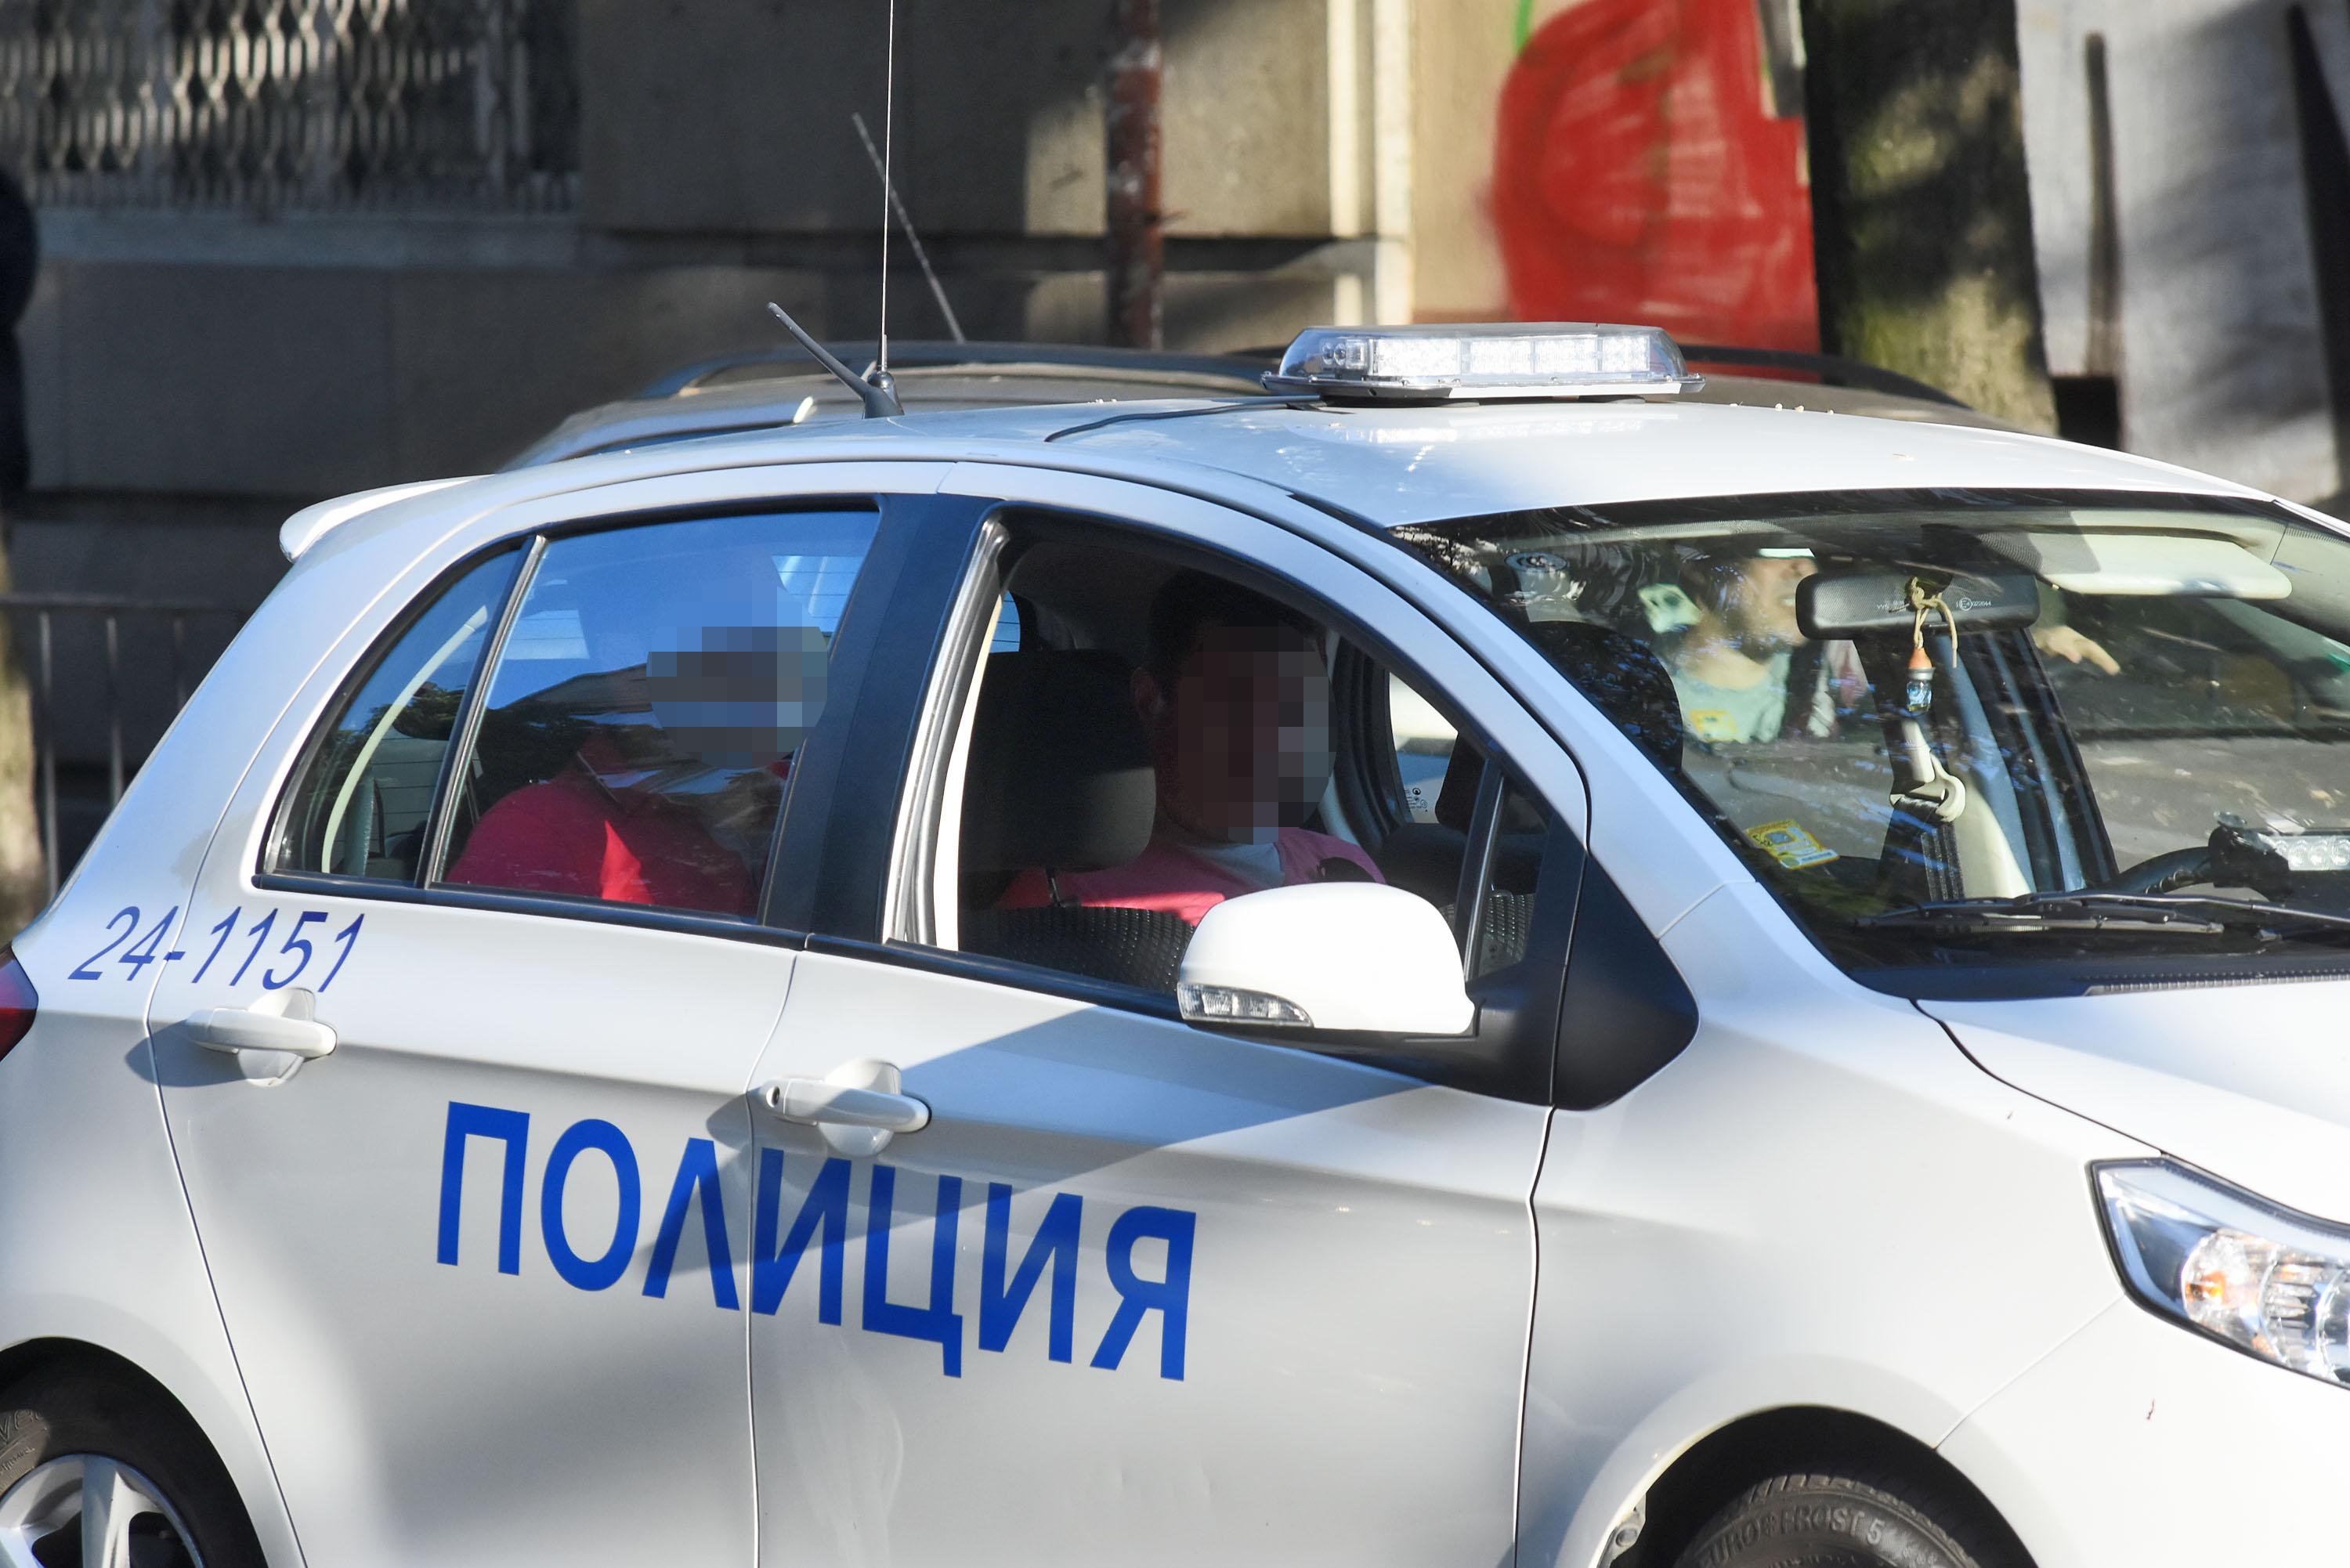 Първо в БЛИЦ: Шеф на научен фонд арестуван за убийство в София